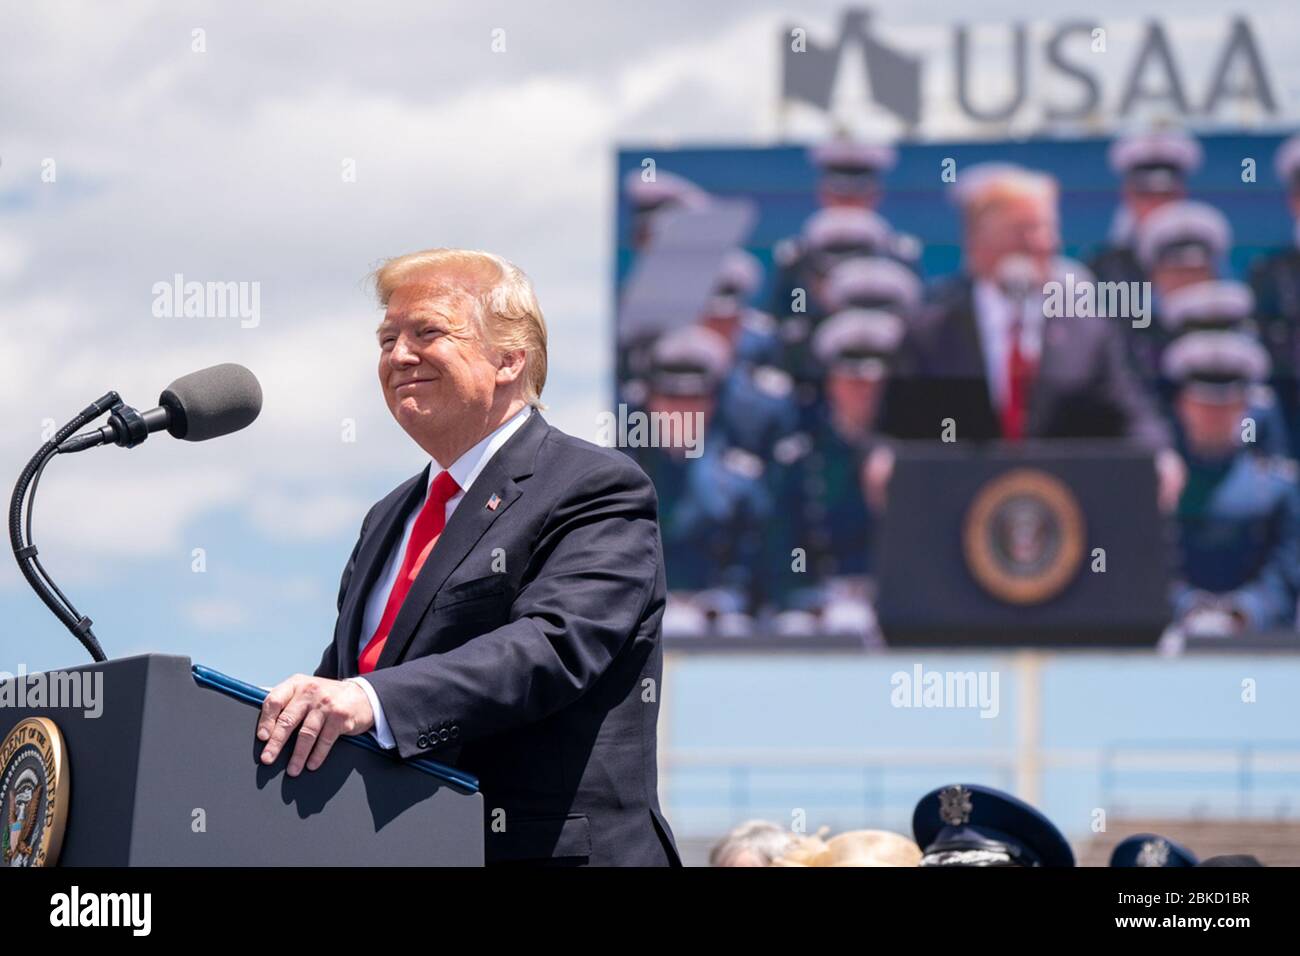 Il presidente Donald J. Trump esprime le sue osservazioni alla cerimonia di laurea dell'Accademia dell'aviazione militare statunitense del 2019 Giovedì 30 maggio 3019, presso lo stadio U.S. Air Force Academy-Falcon a Colorado Springs, Cool. La cerimonia di laurea dell'Accademia dell'aviazione militare degli Stati Uniti Foto Stock